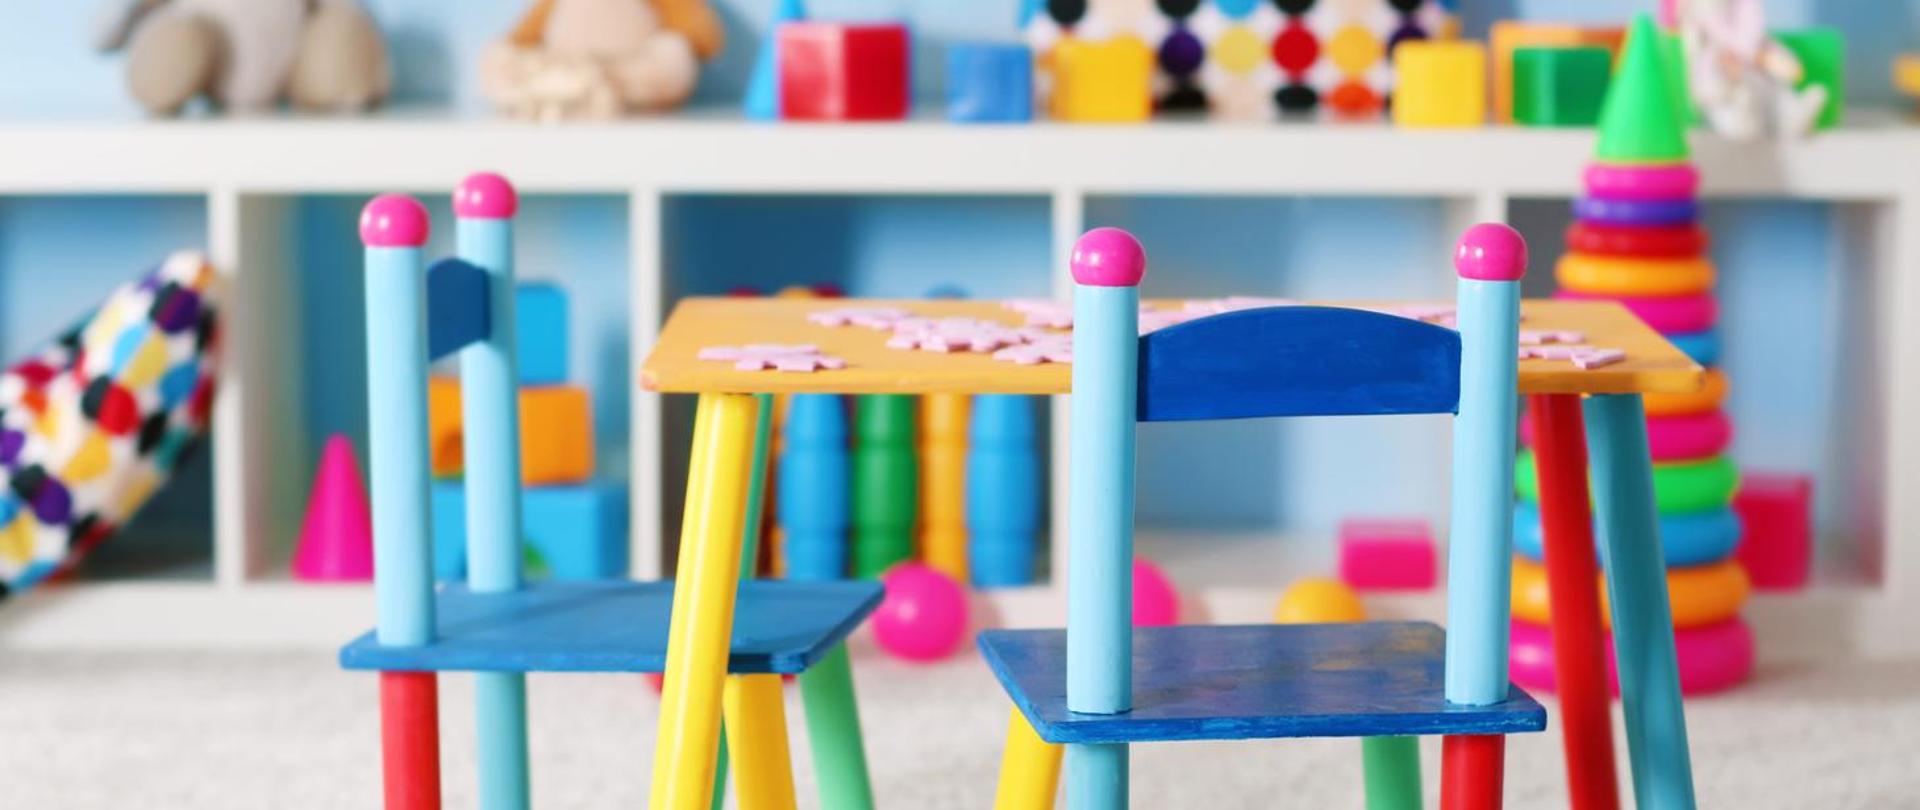 Dziecięcy pokój z zabawkami. Na pierwszym planie dwa kolorowe krzesełka przy stoliku. Na drugim planie na białej półce widać zabawki - kocki, pluszaki.